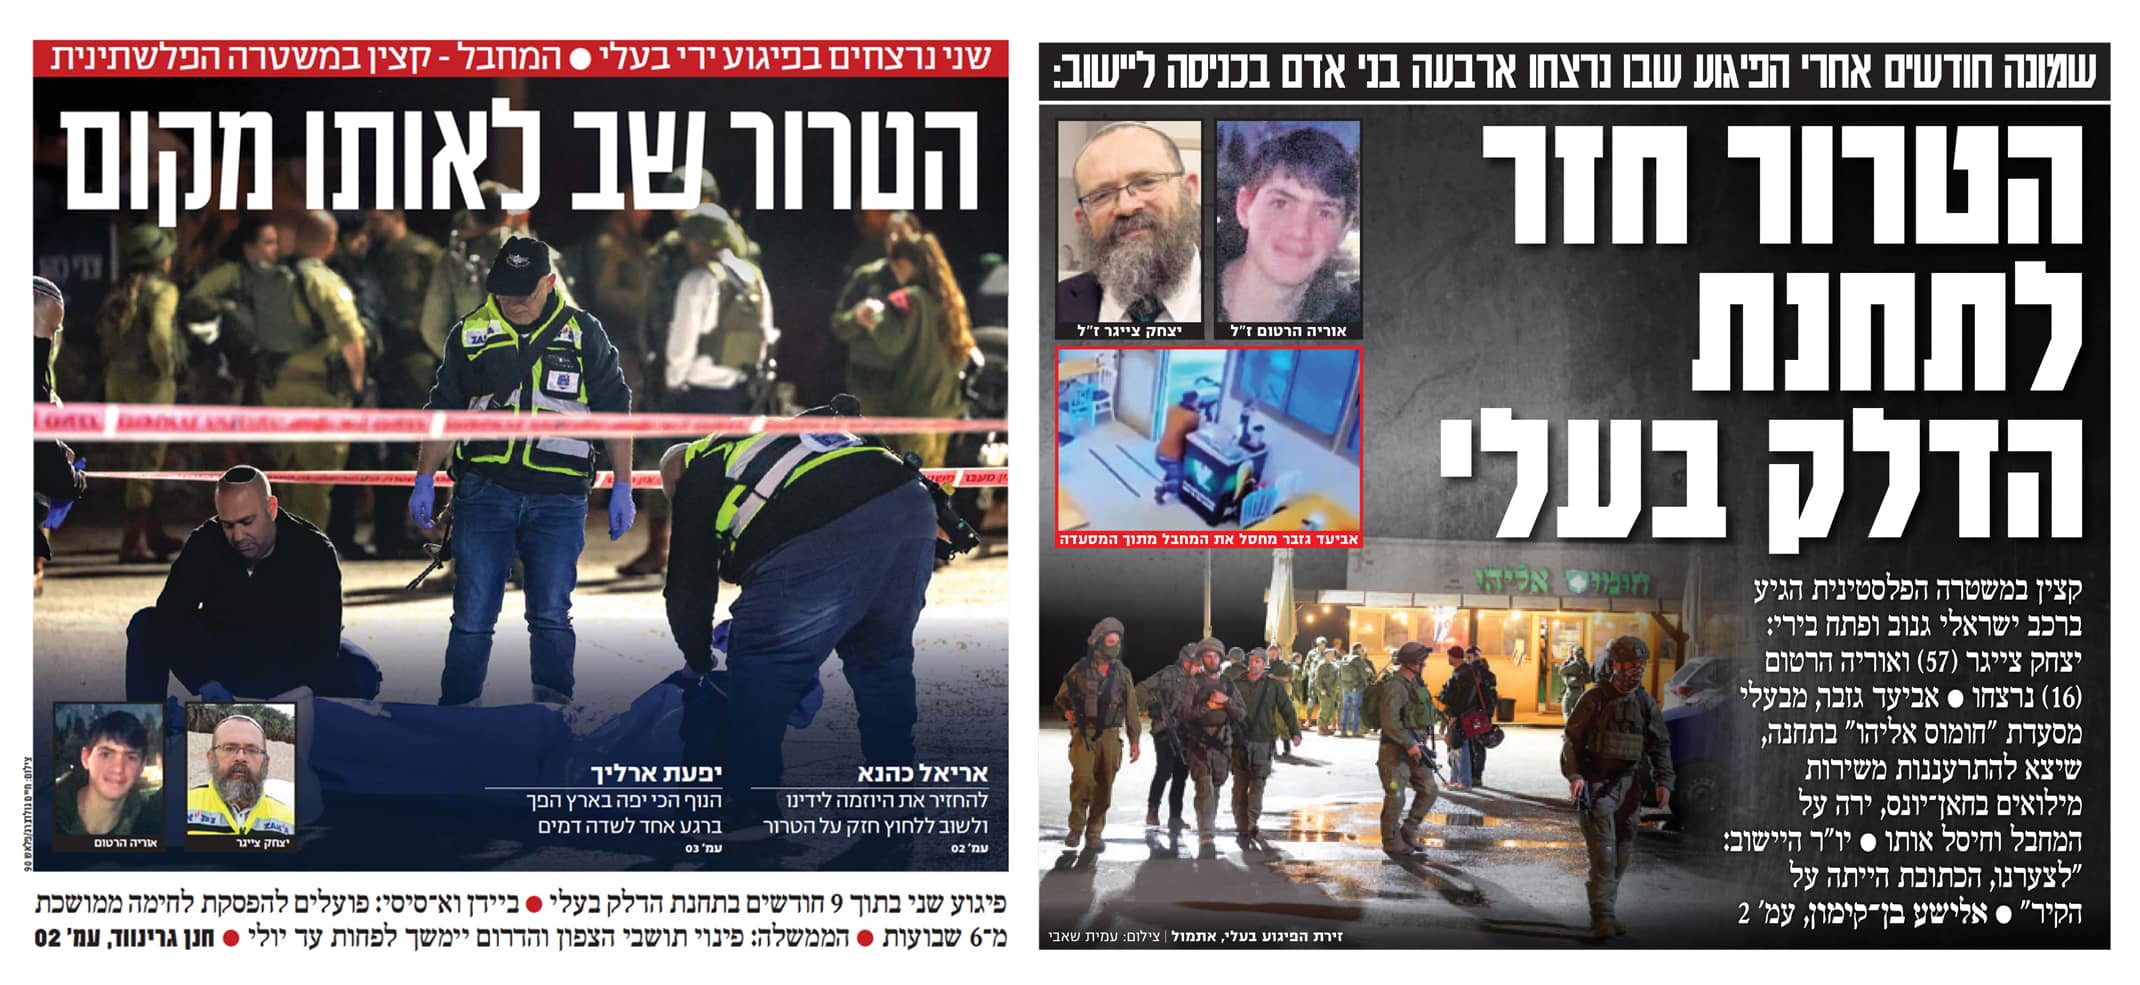 הכותרות הראשיות של "ידיעות אחרונות" (מימין) ו"ישראל היום", הבוקר